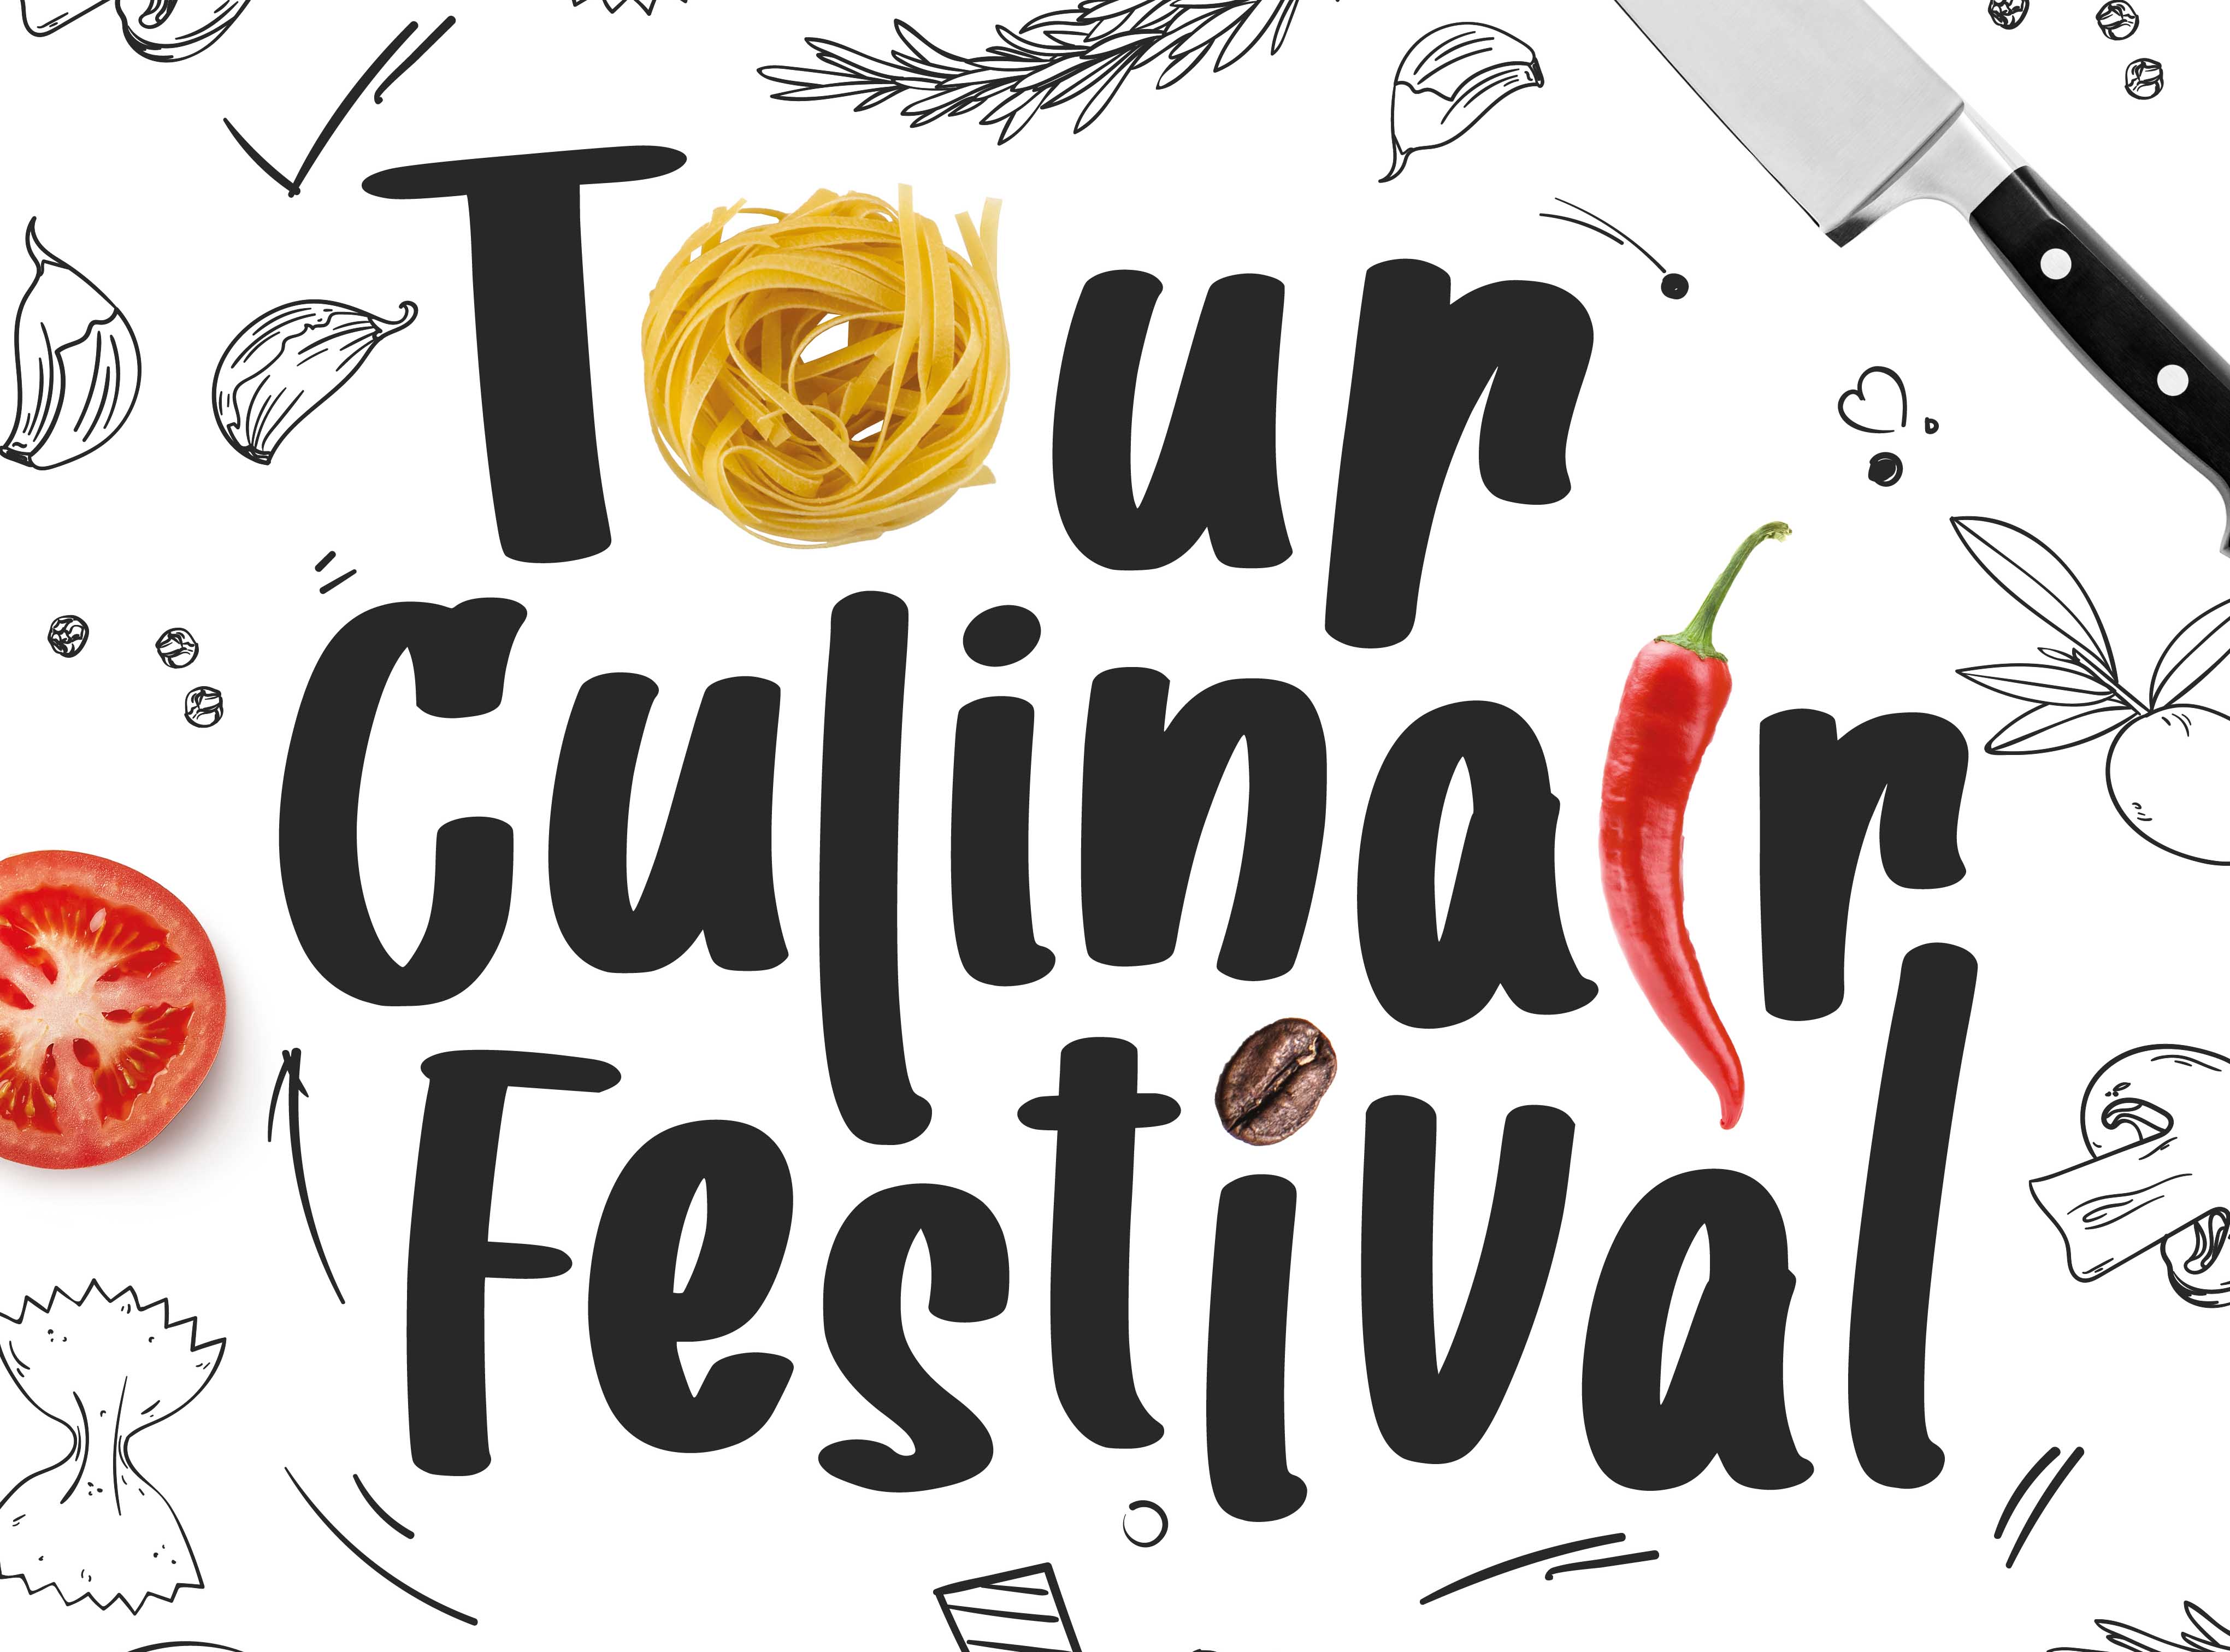 Tour Culinair Festival